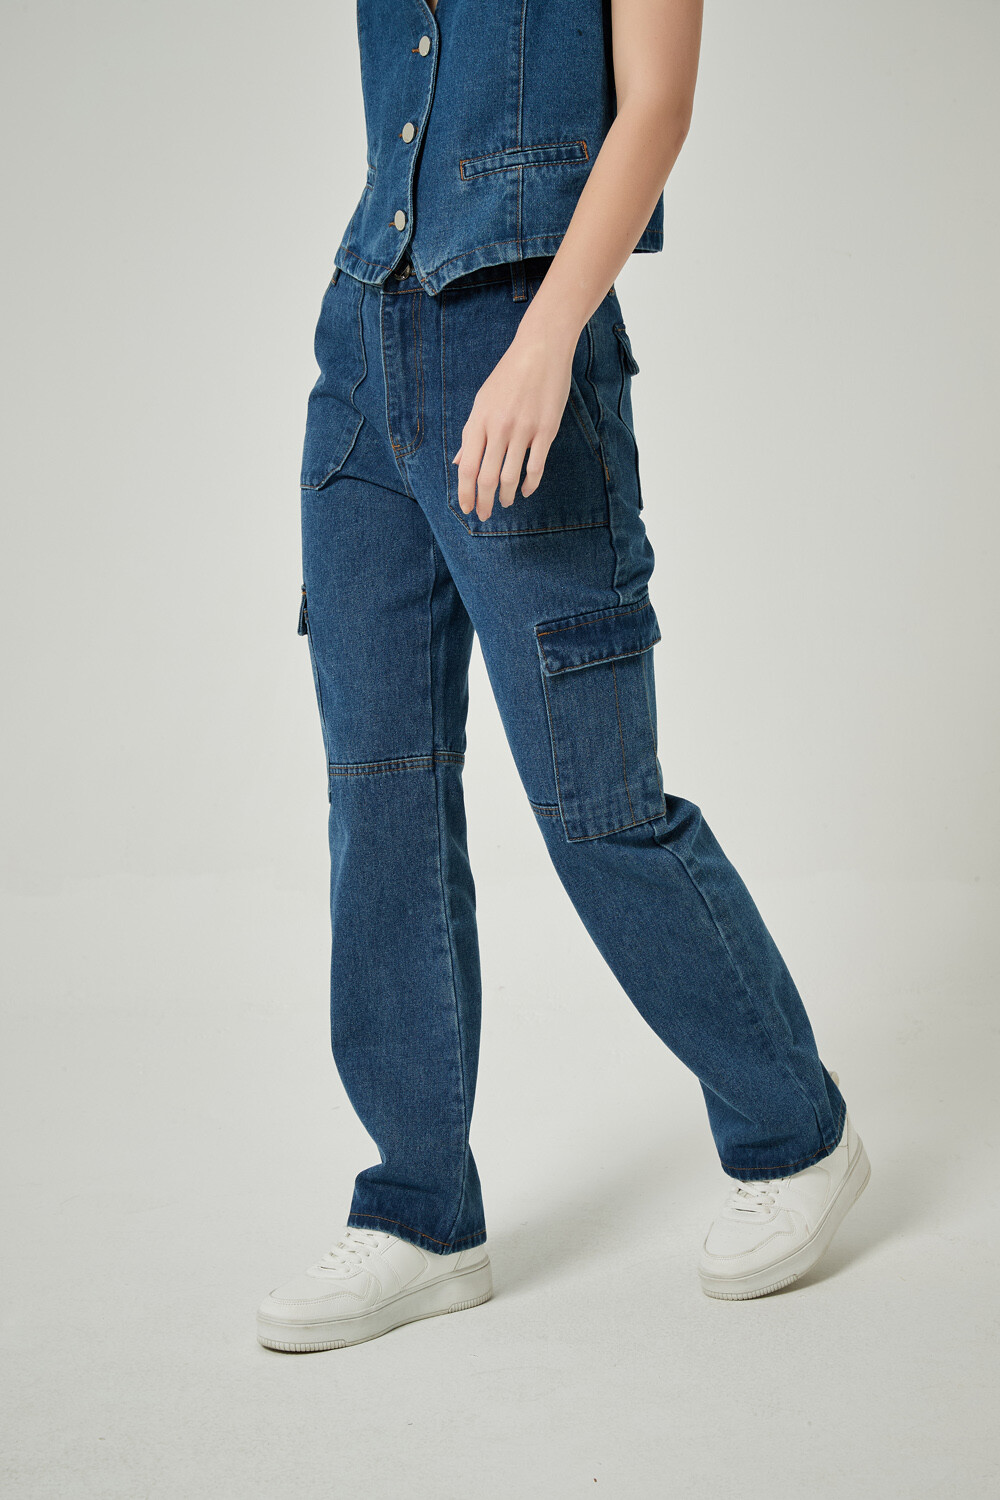 Pantalon Lotte Azul Medio